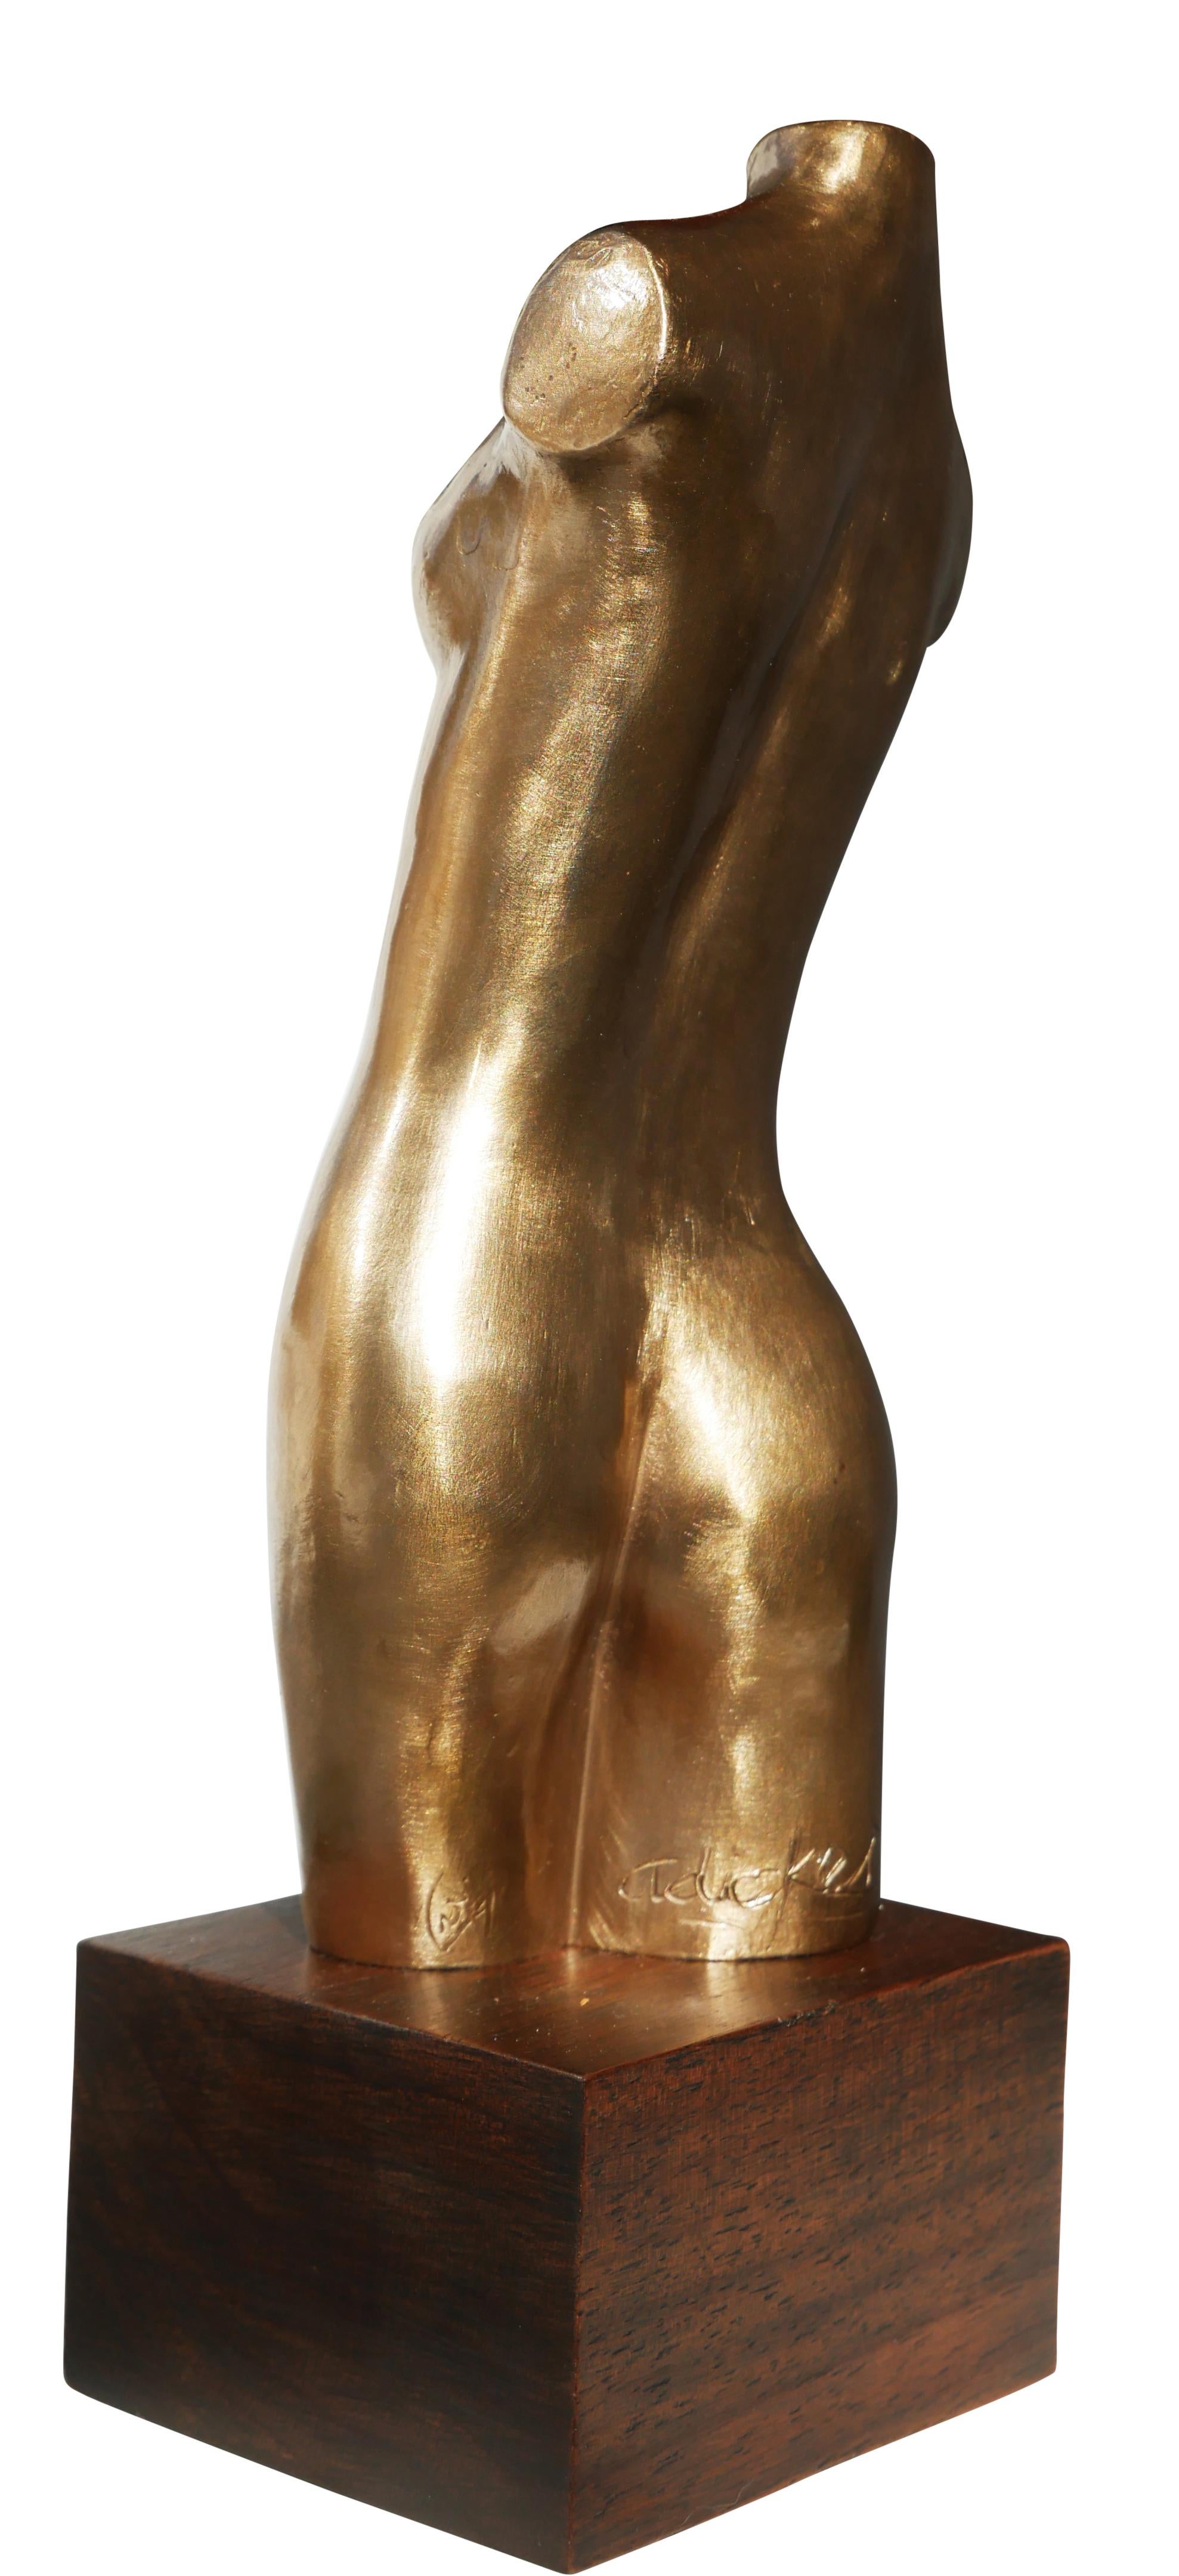 Abstrakte, brutale, weibliche Torso-Büste aus Bronze, Skulptur – Sculpture von David Adickes